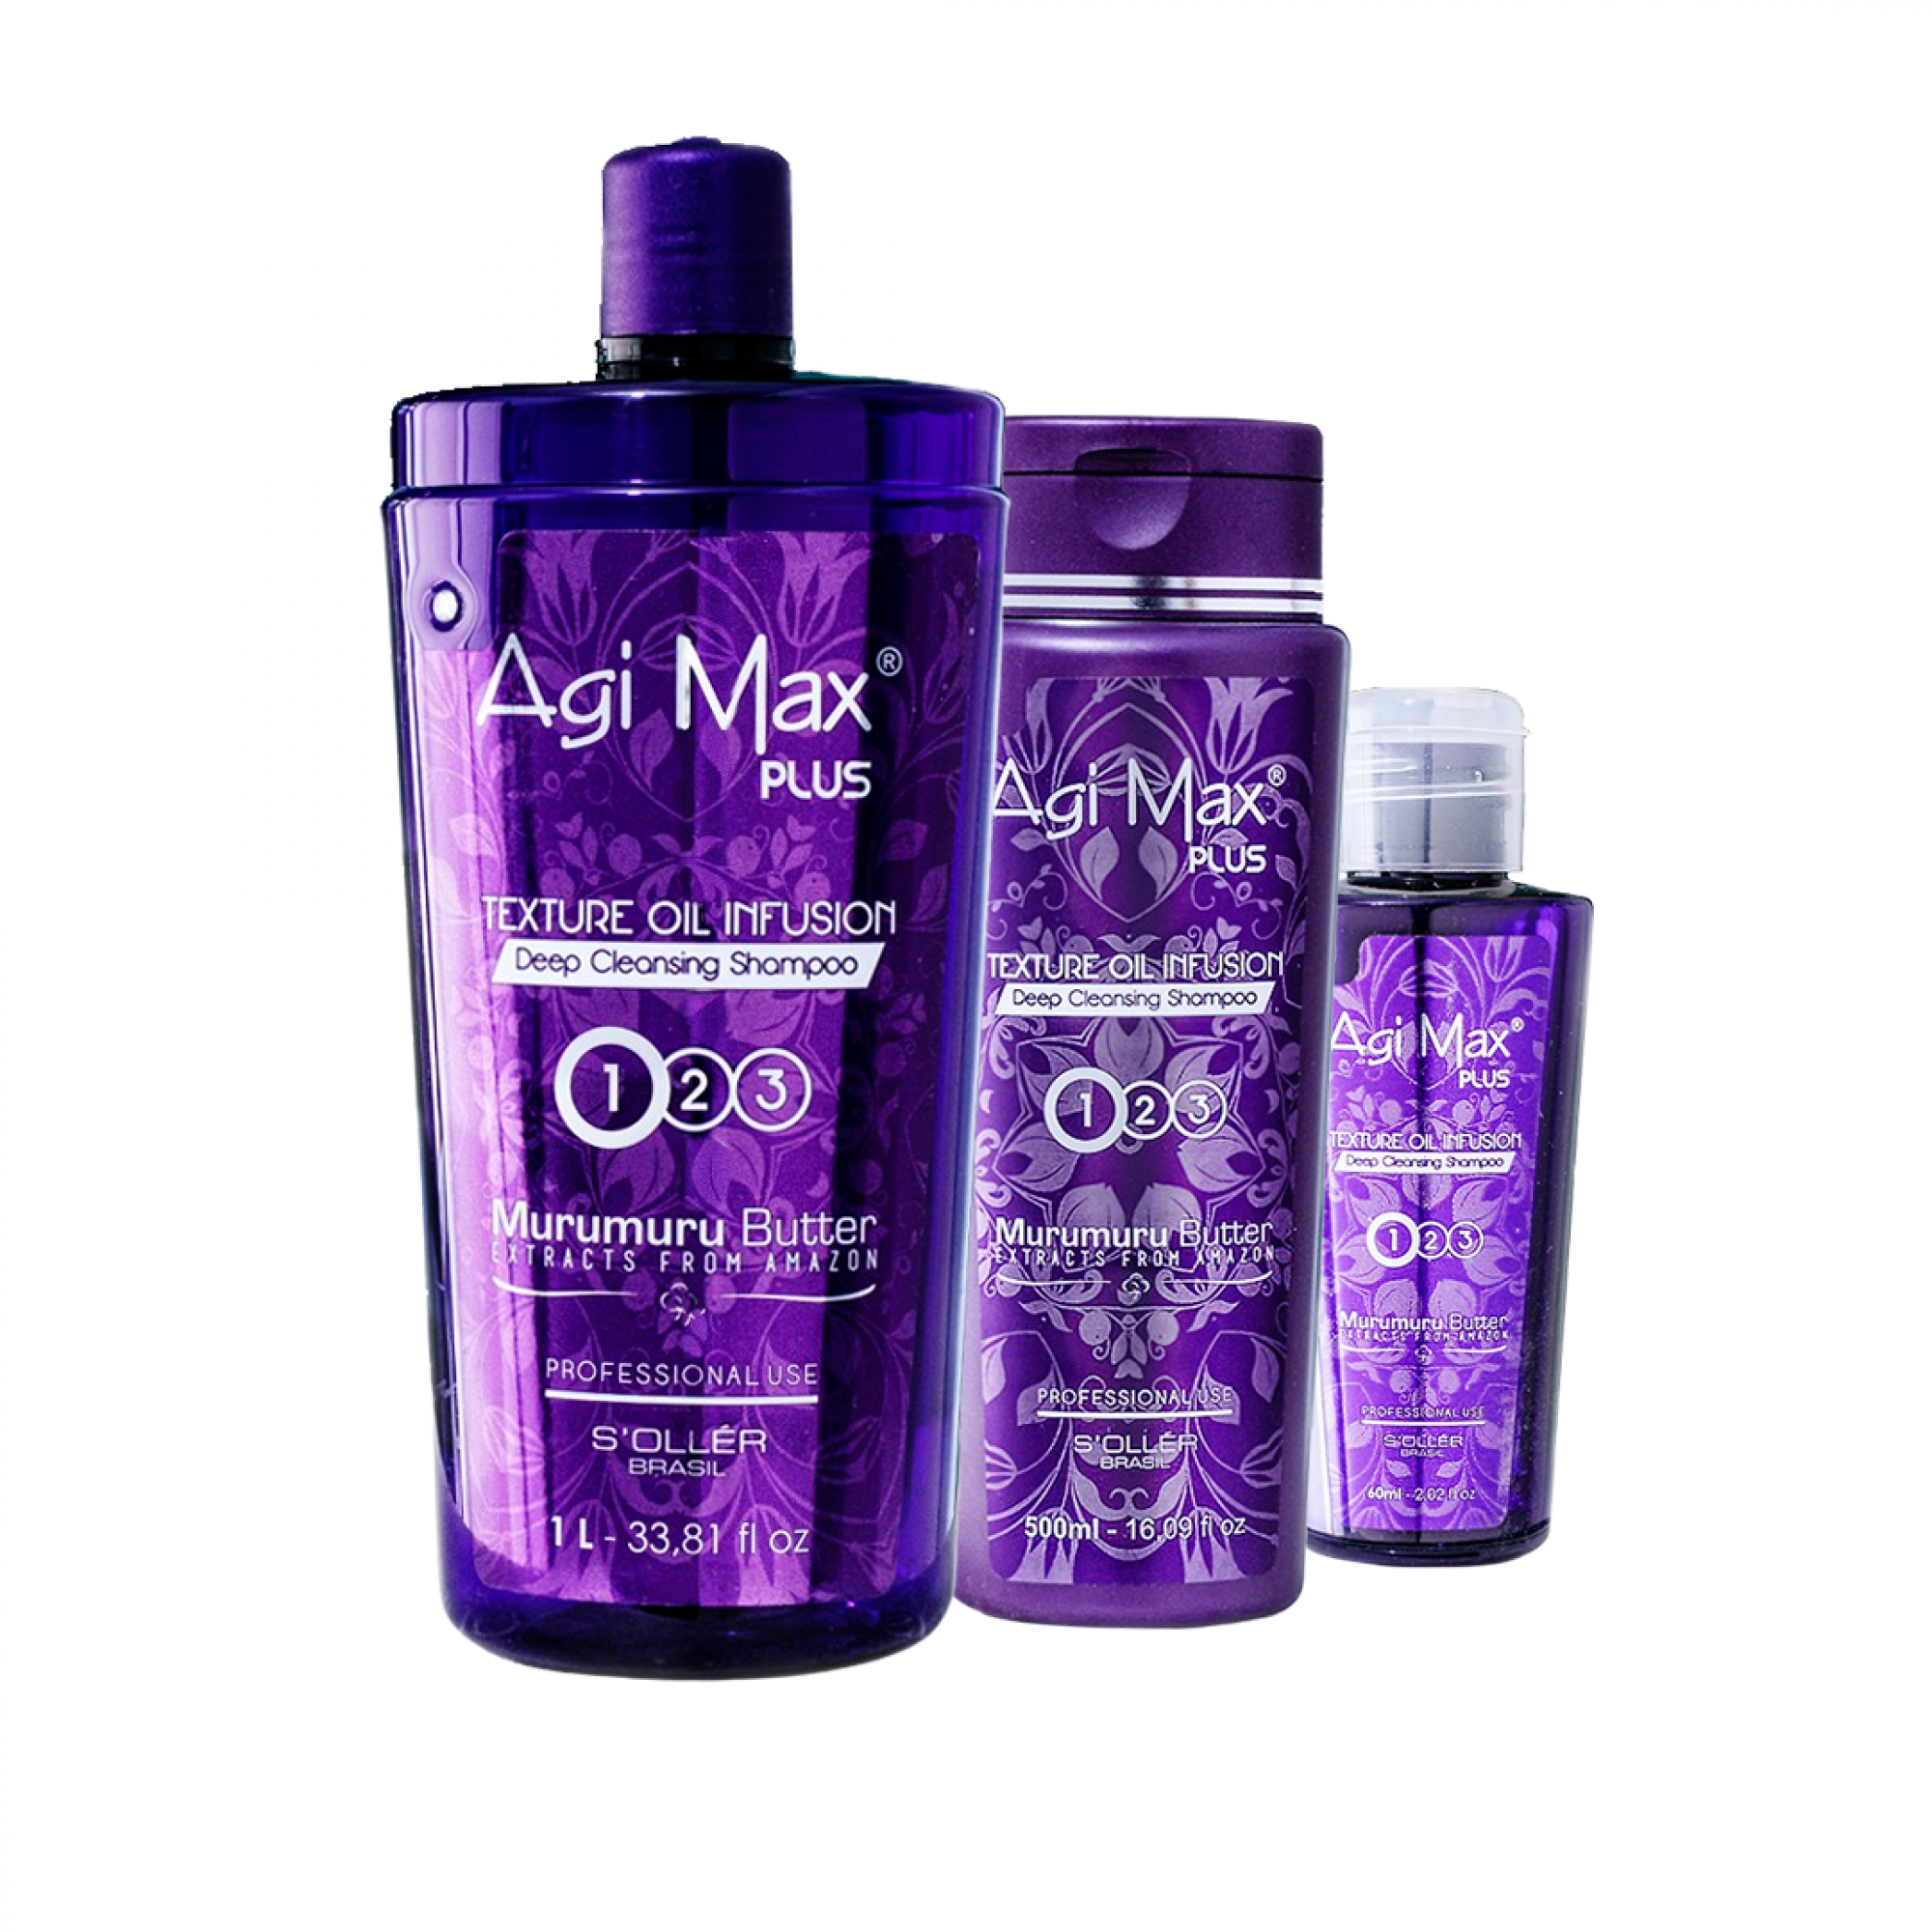 Produto Shampoo Maintenance | Coleção Agi Max Plus